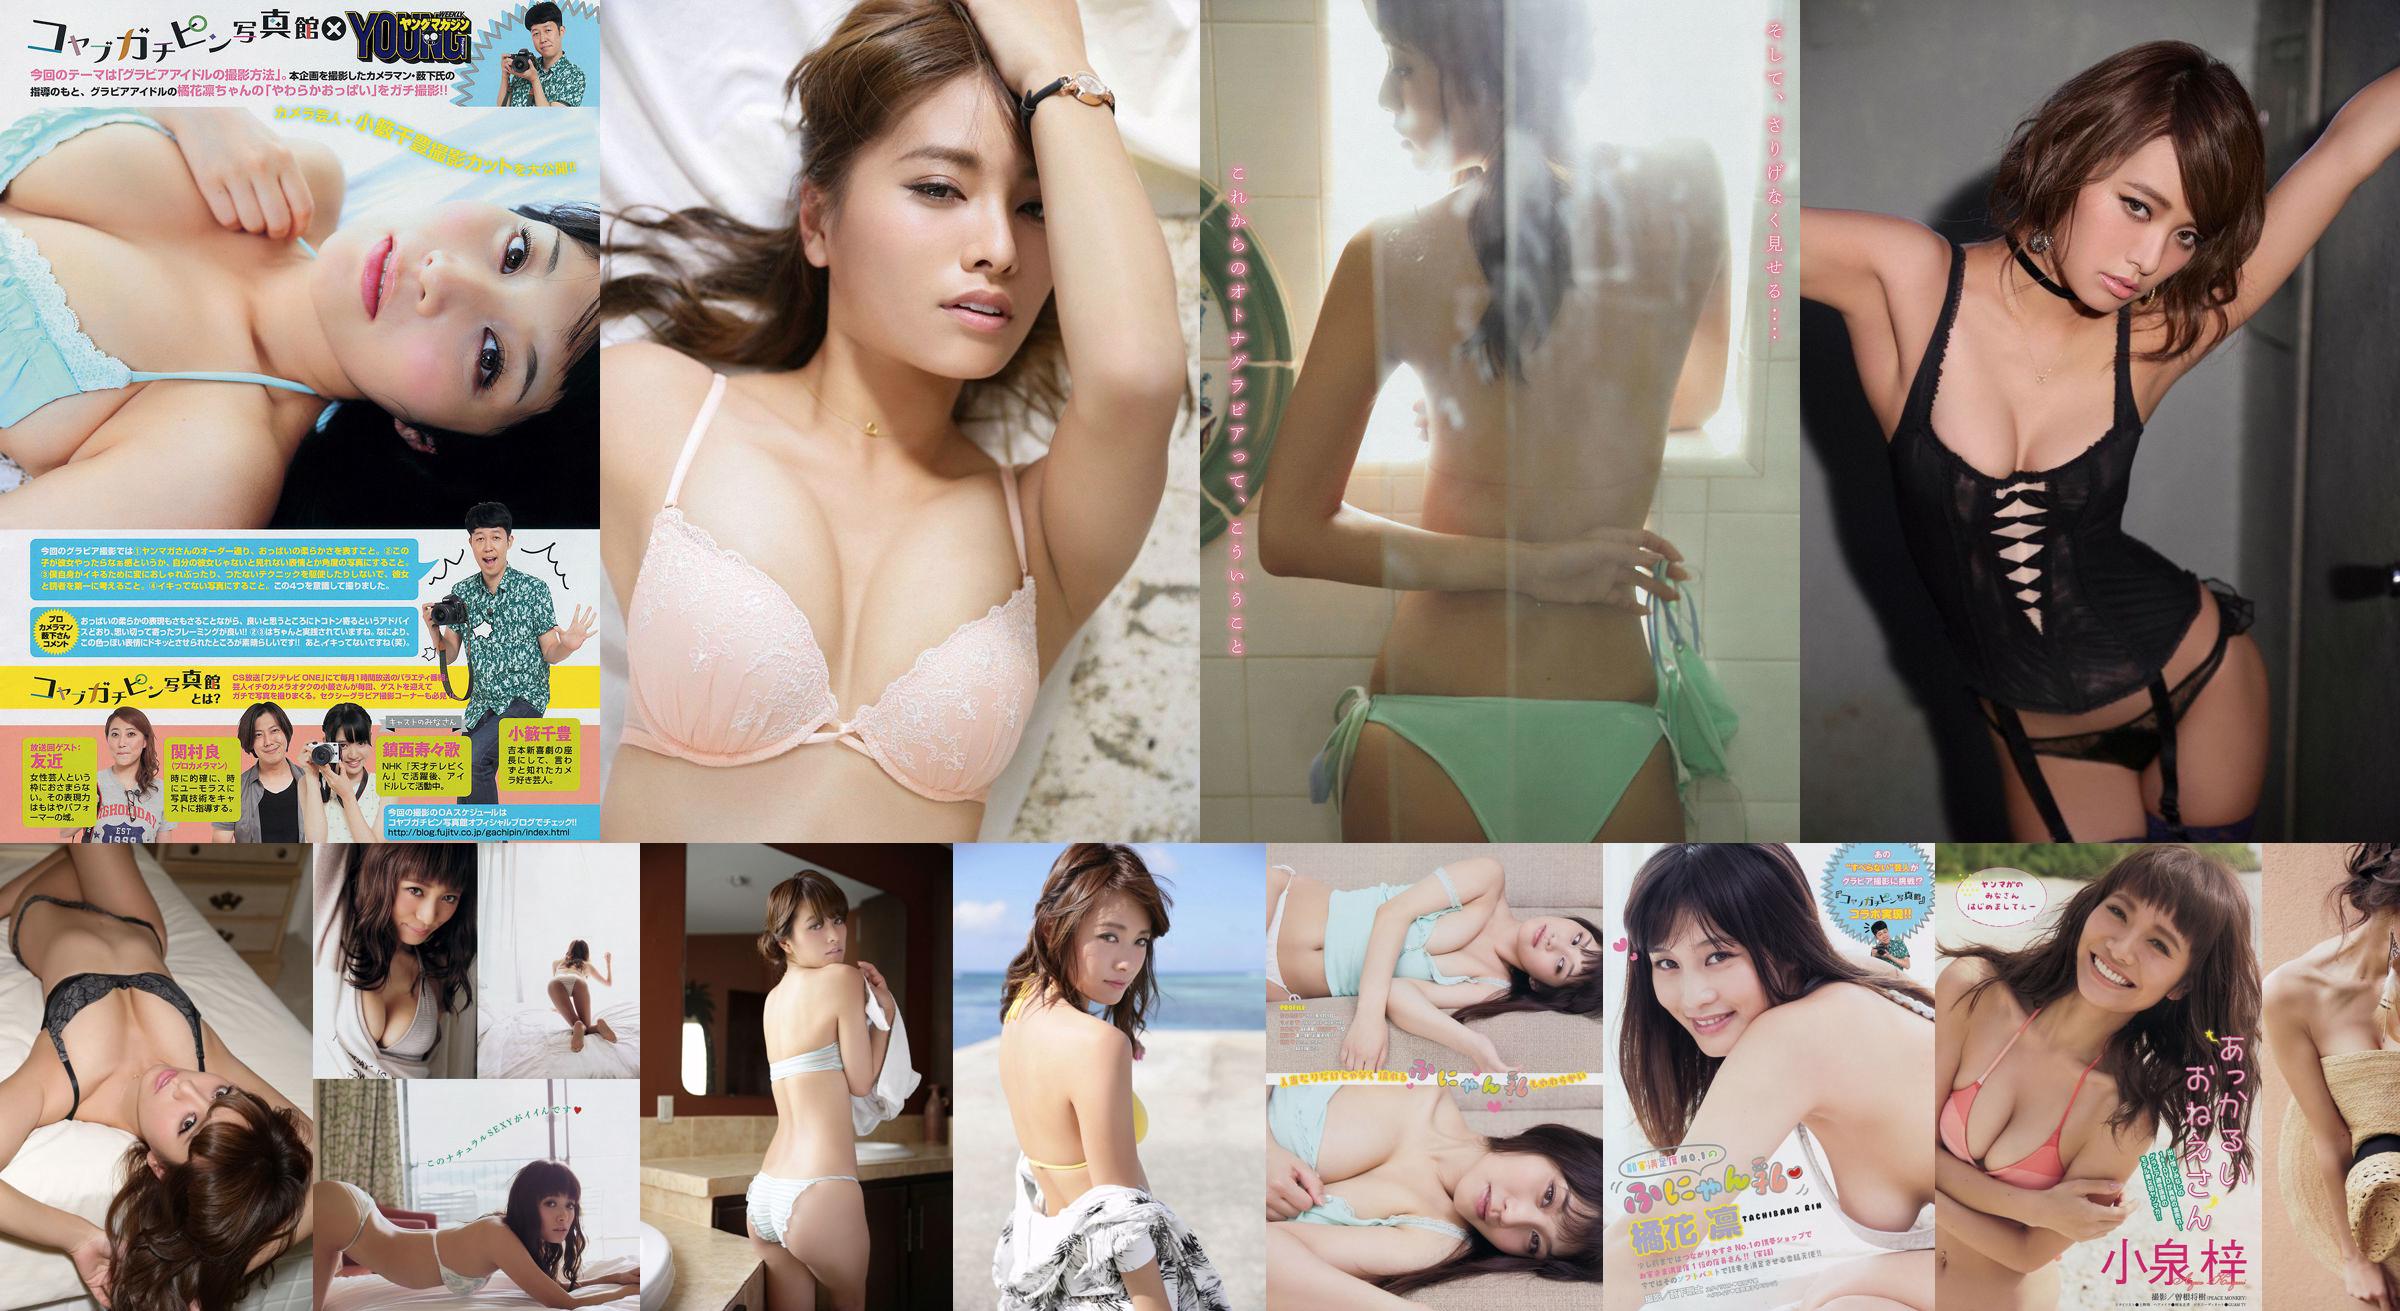 [Young Magazine] Azusa Koizumi Tachibana Rin 2014 No.43 Photo Magazine No.2647f5 Page 1